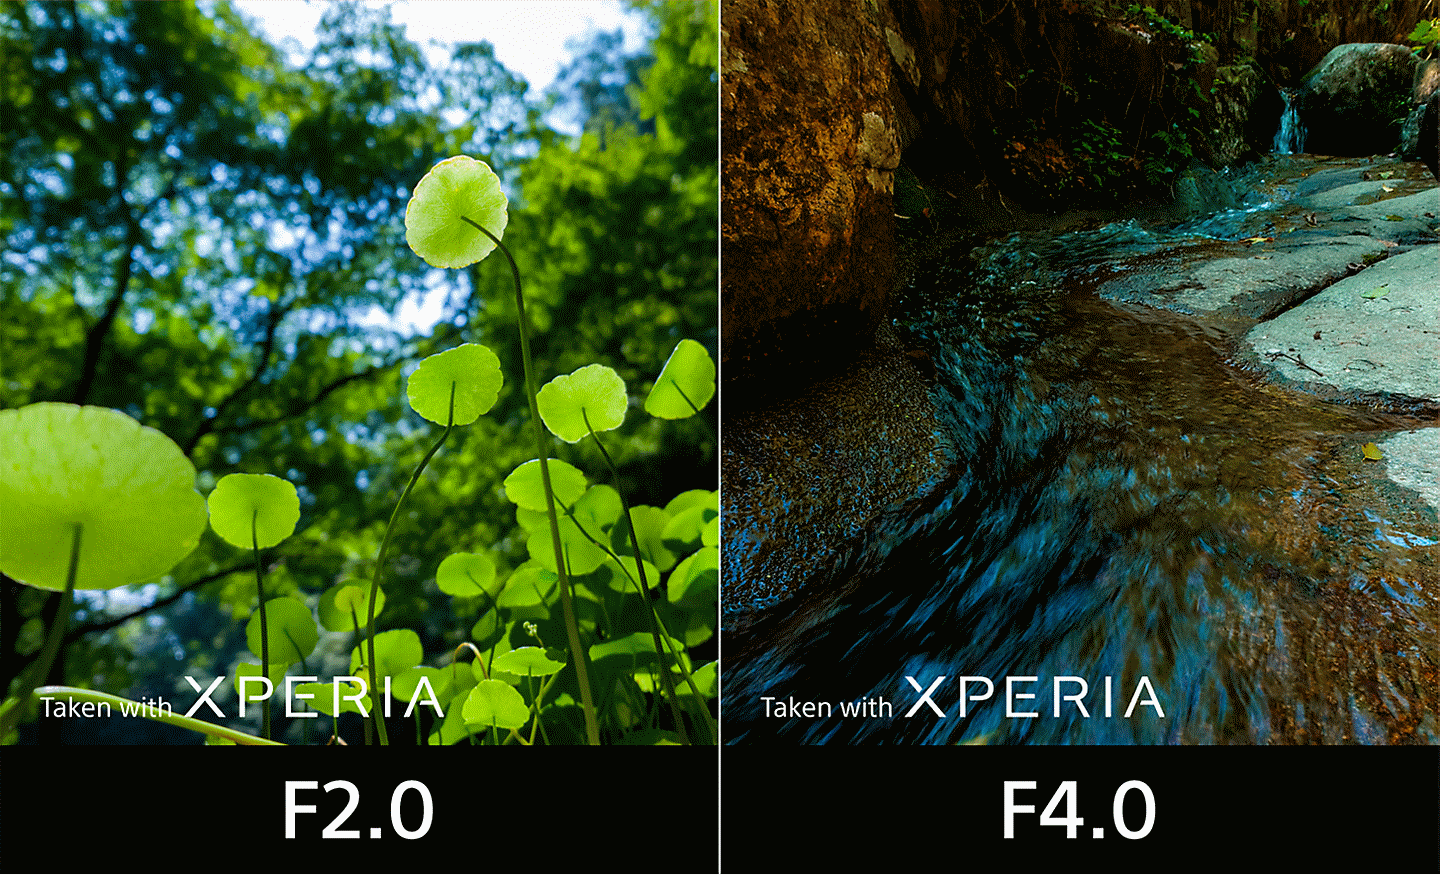 Obrázok rozdelený na dve časti porovnávajúci snímku rastlín zachytenú s clonou F2,0 a snímku potoka zachytenú s clonou F4,0. Na fotografiách sa nachádza text Taken with XPERIA.